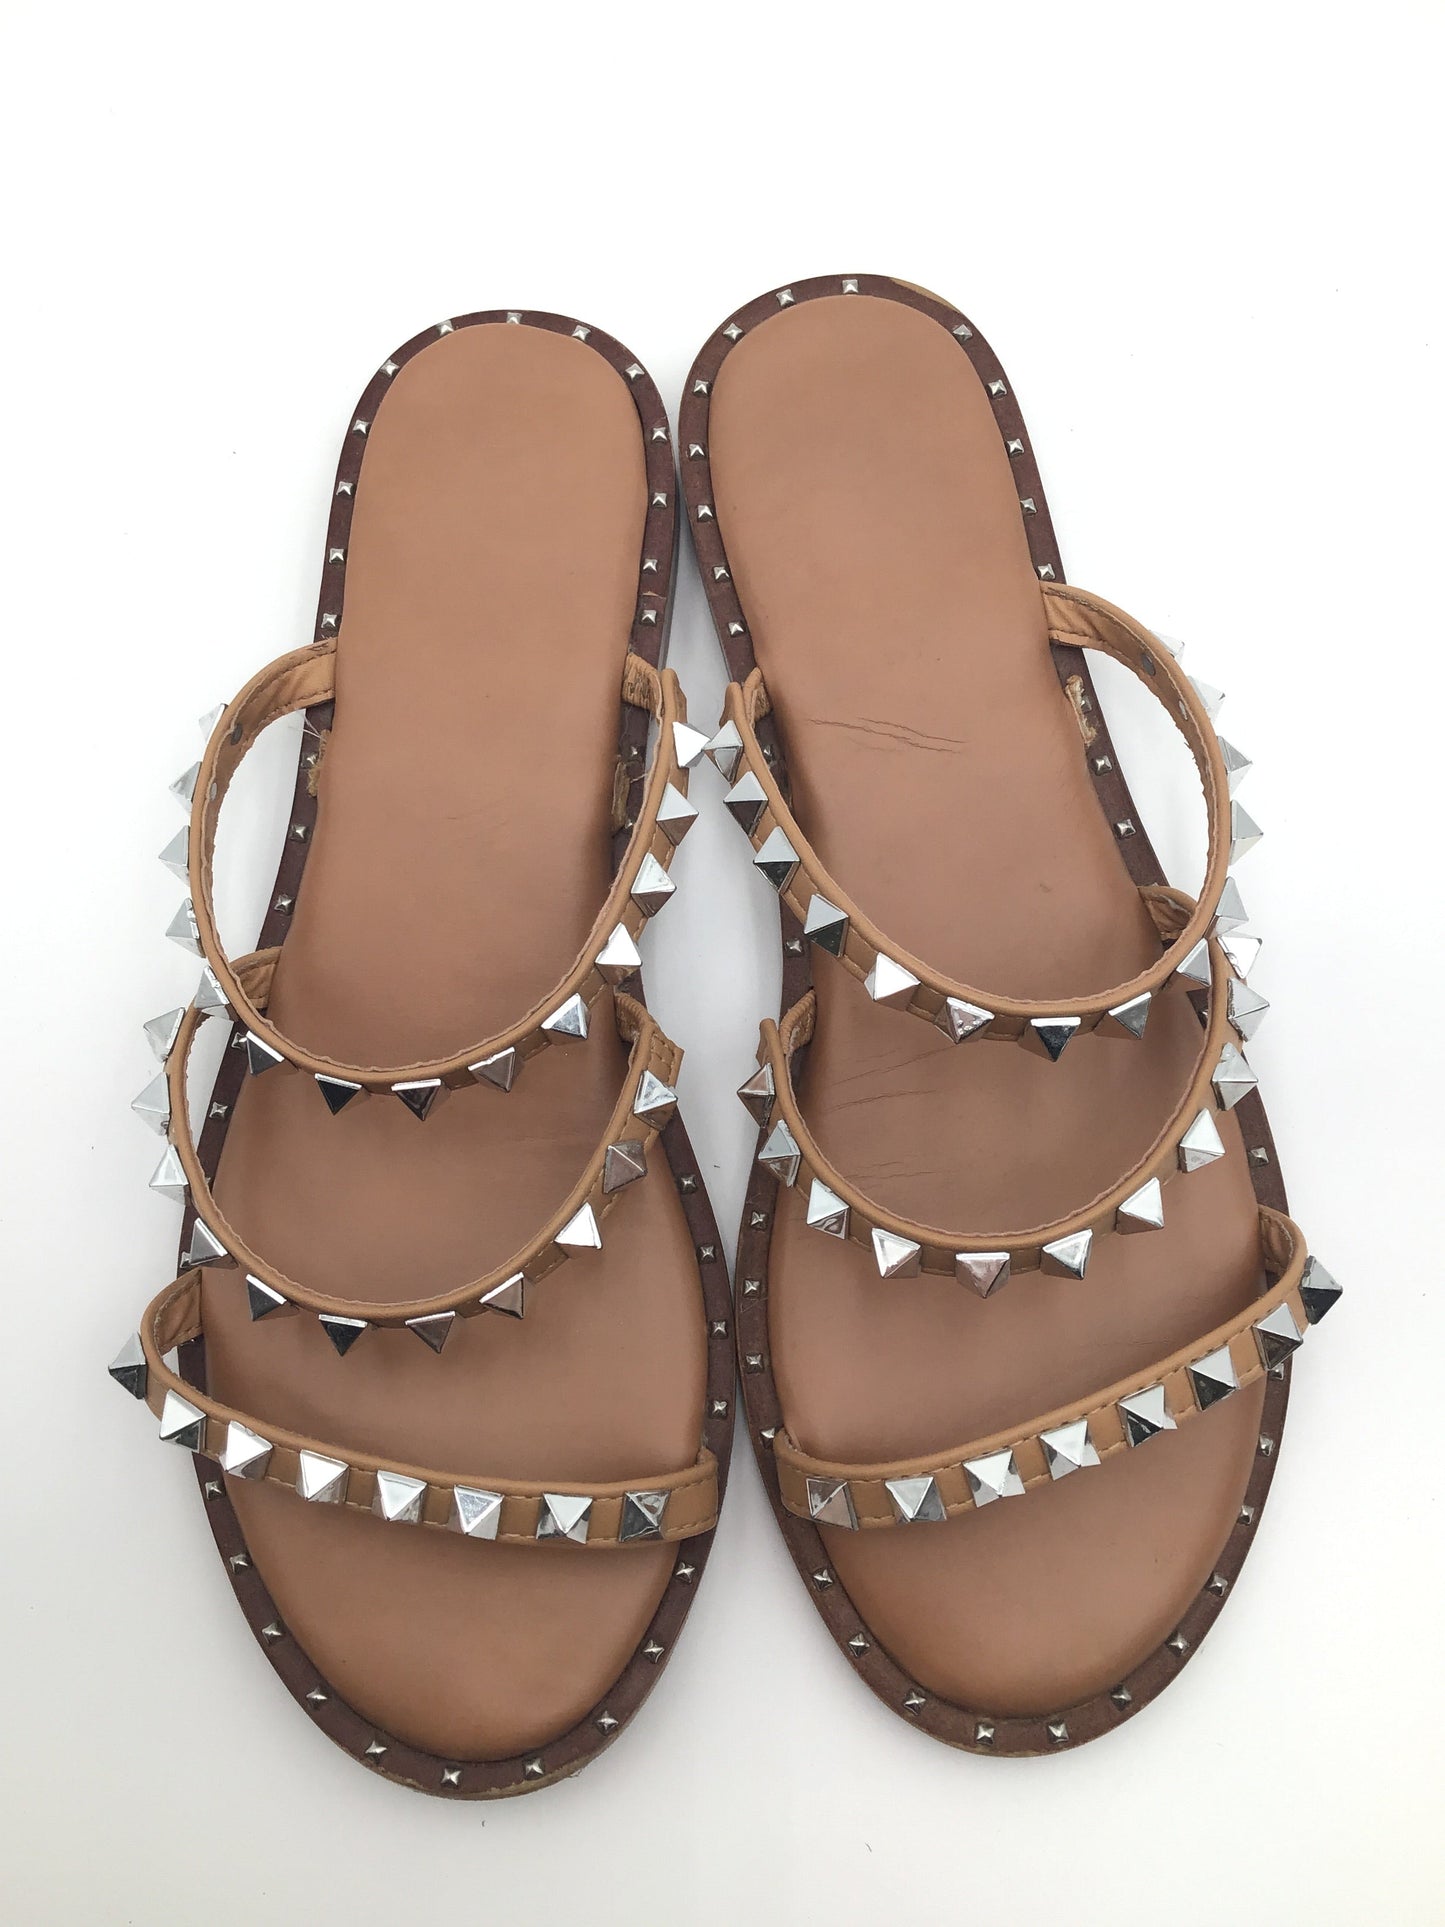 Tan Sandals Flip Flops Cushionaire, Size 7